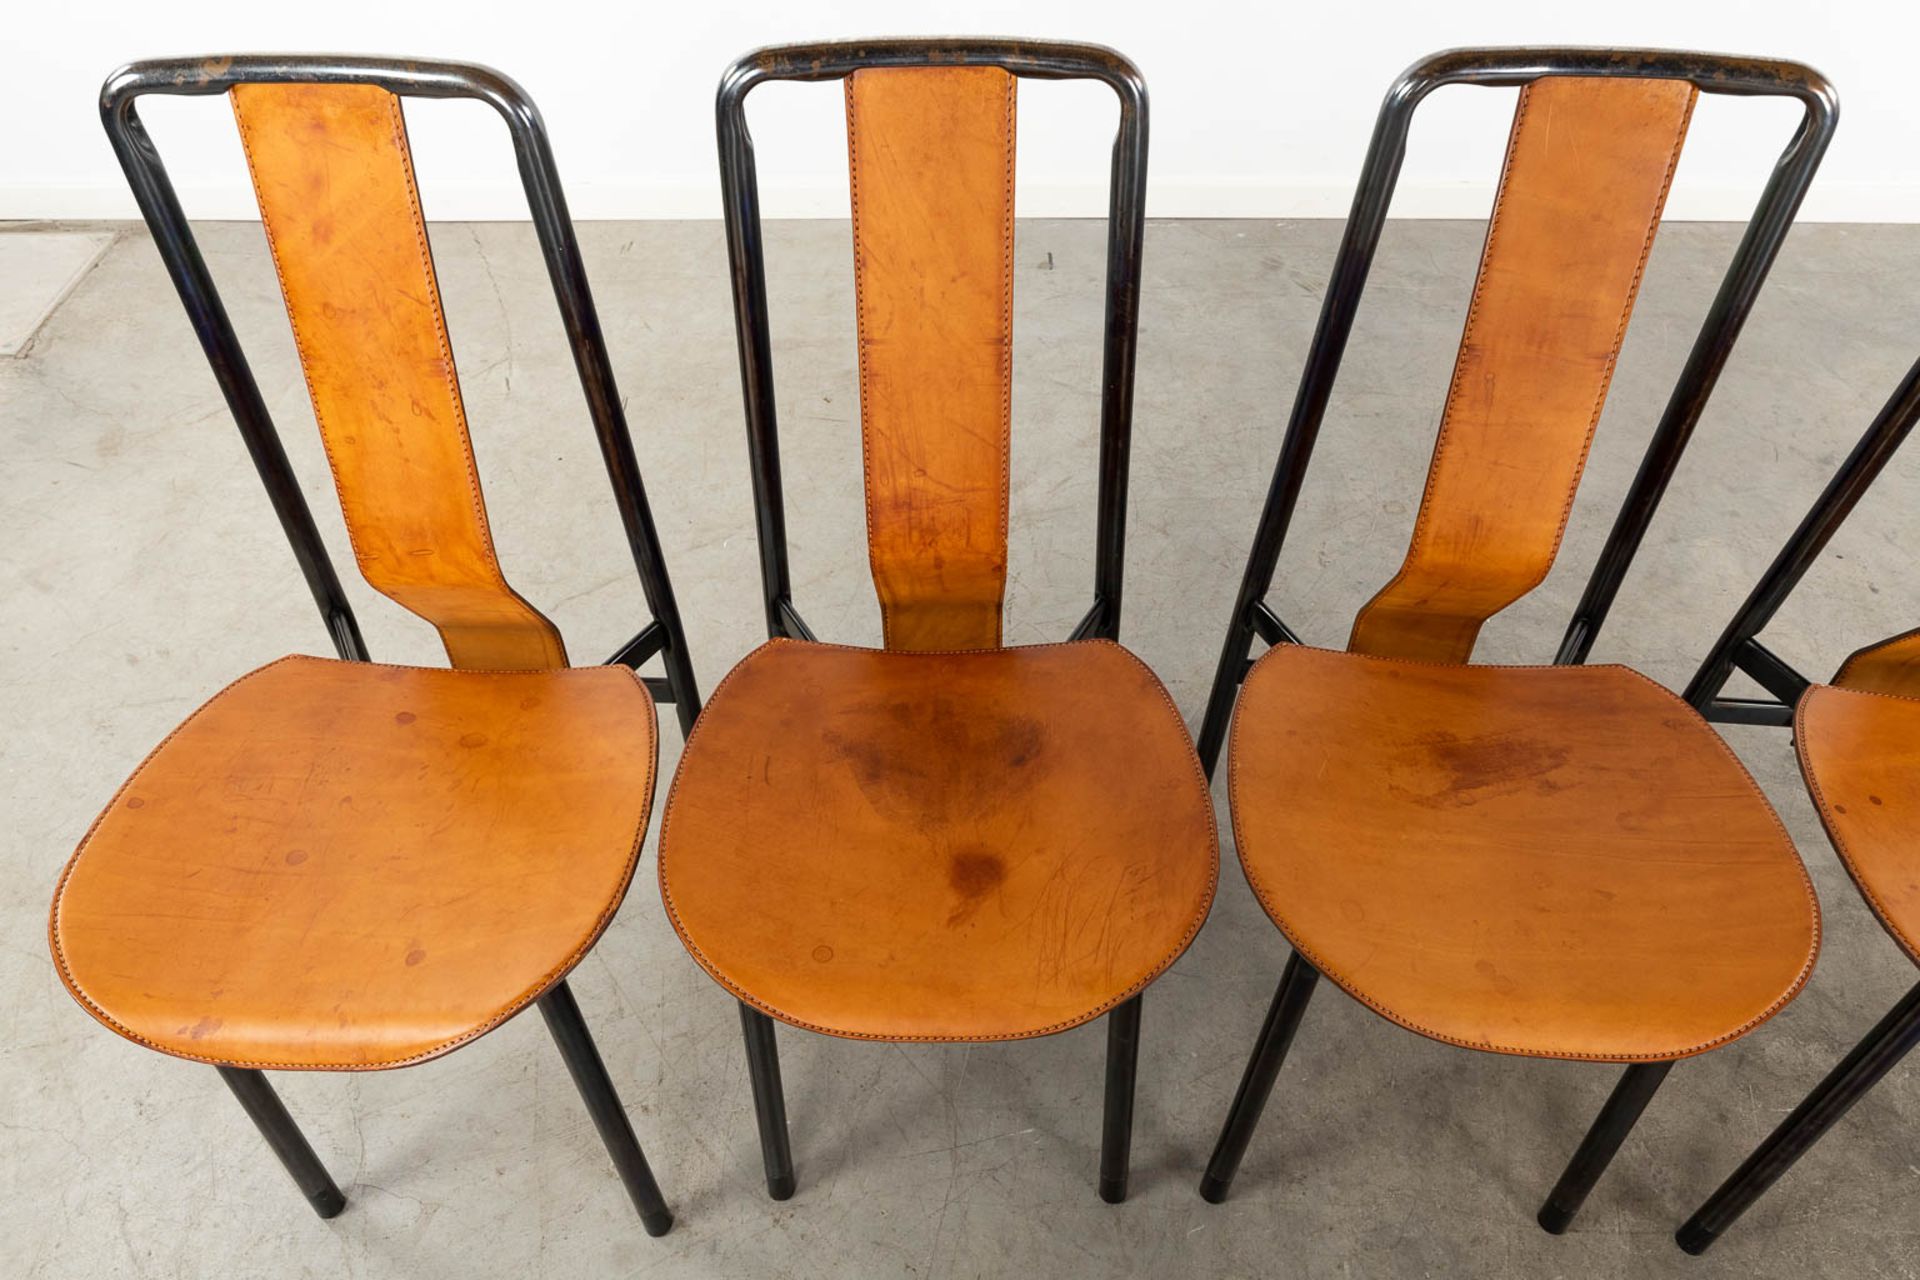 Achille CASTIGLIONI (1918-2002) 'Irma' for Zanotta, 6 chairs. (D:49 x W:40 x H:90 cm) - Image 4 of 17